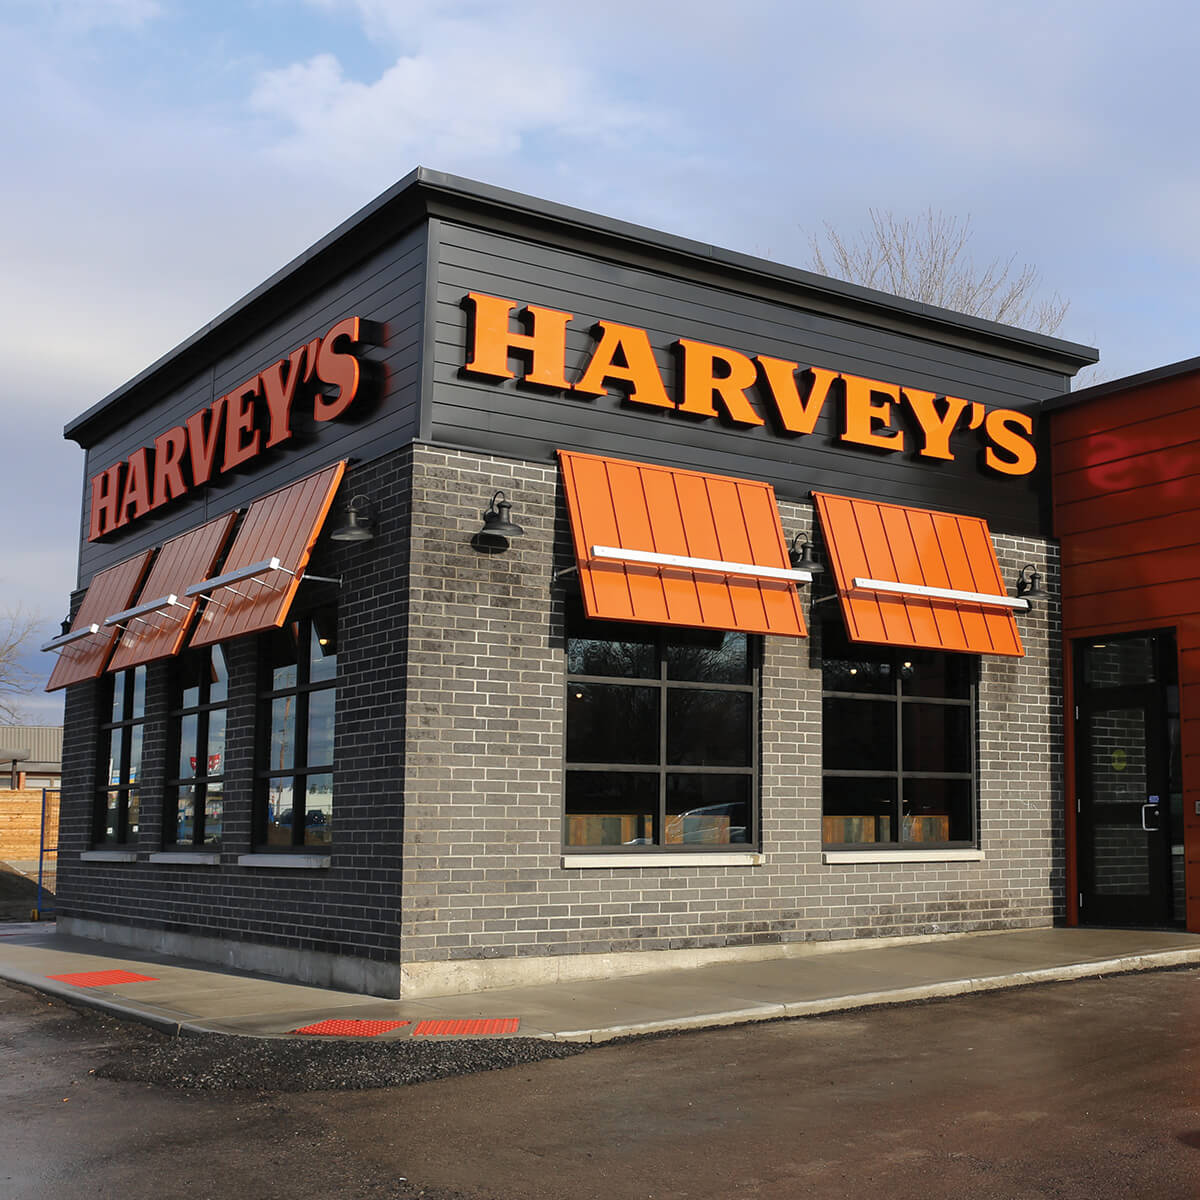 Harvey's Restaurant